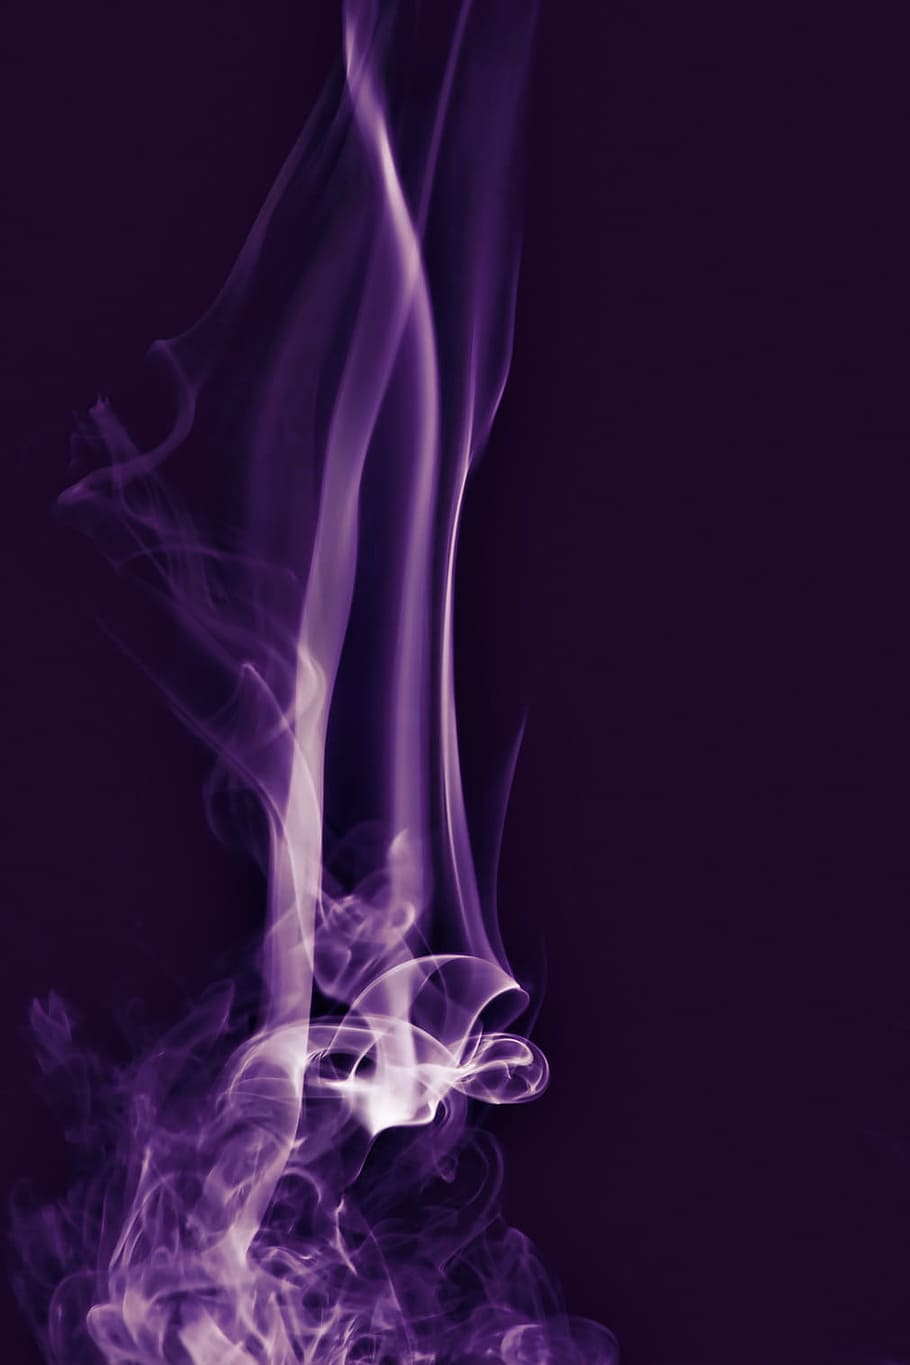 aromaterapia, fondo, color, olor, humo, humo - estructura física, movimiento, resumen, fondo negro, foto de estudio